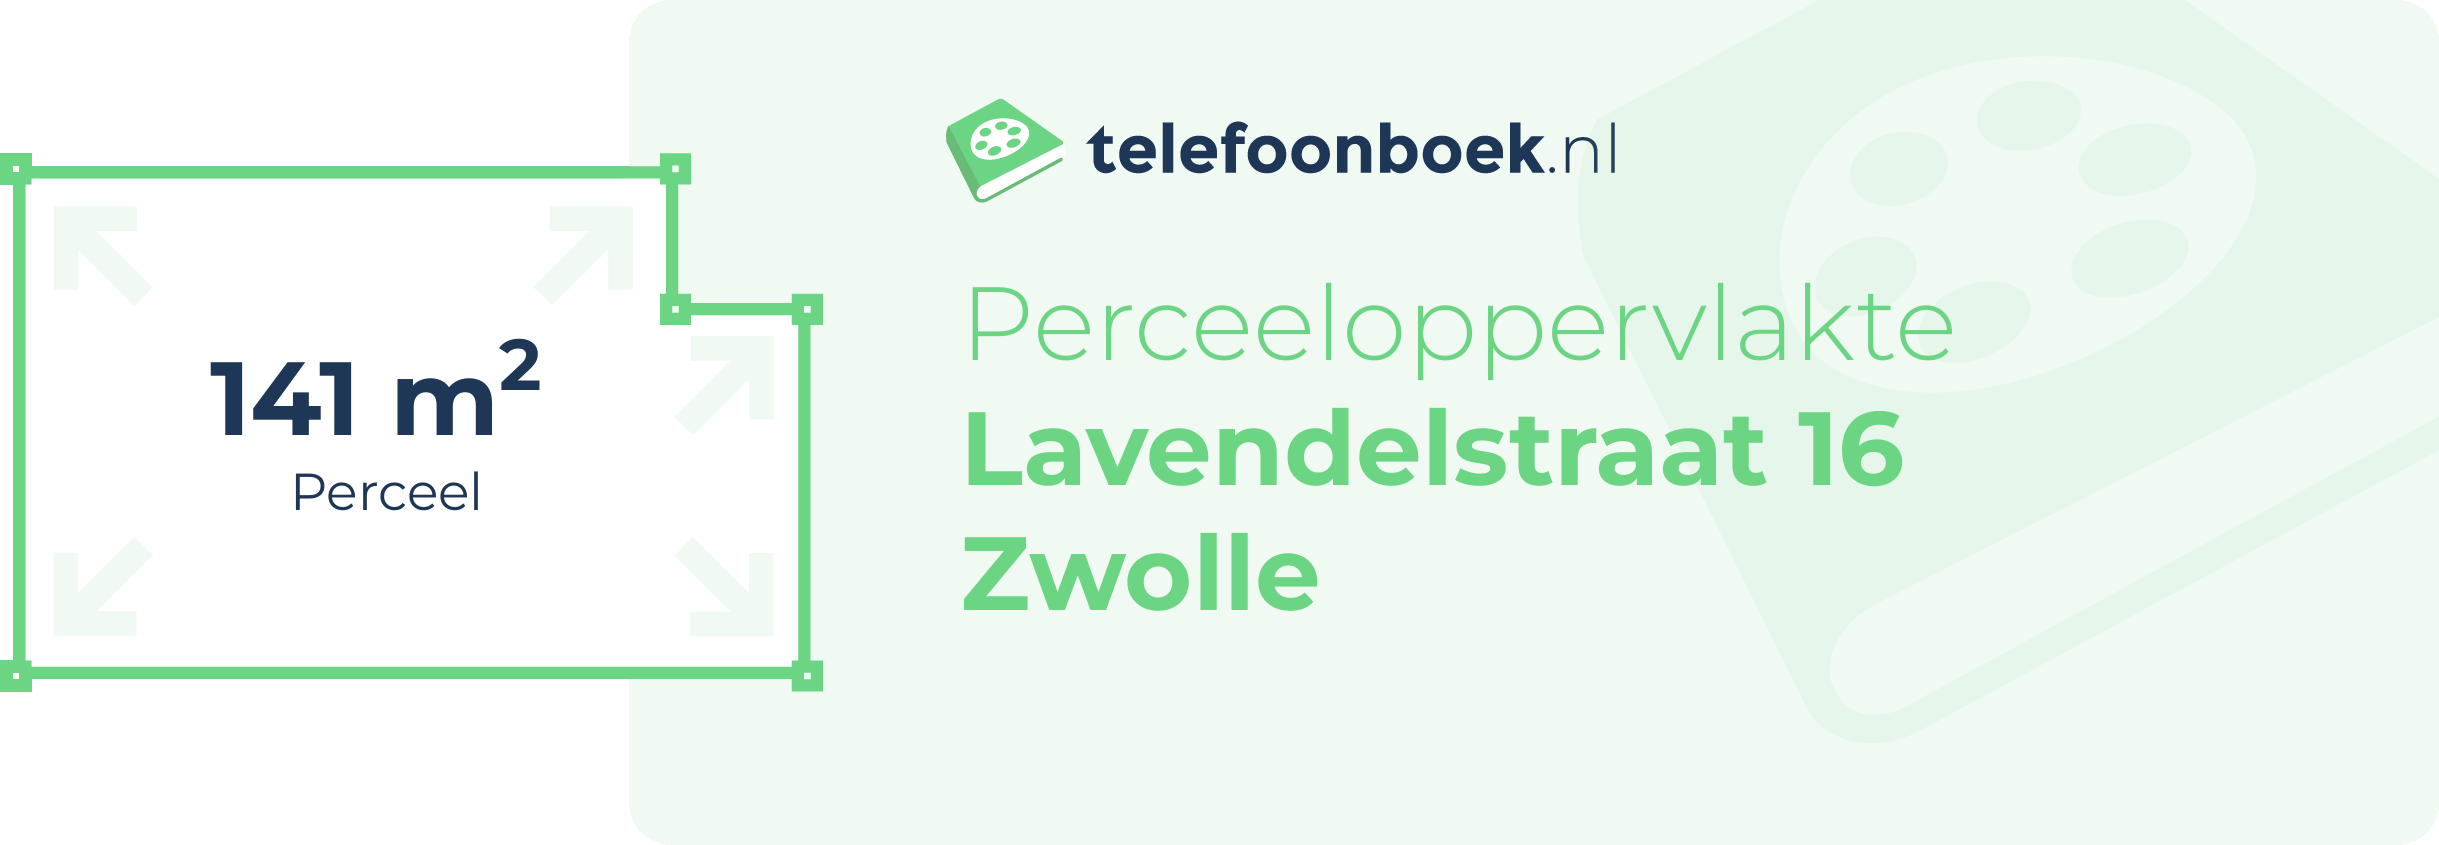 Perceeloppervlakte Lavendelstraat 16 Zwolle